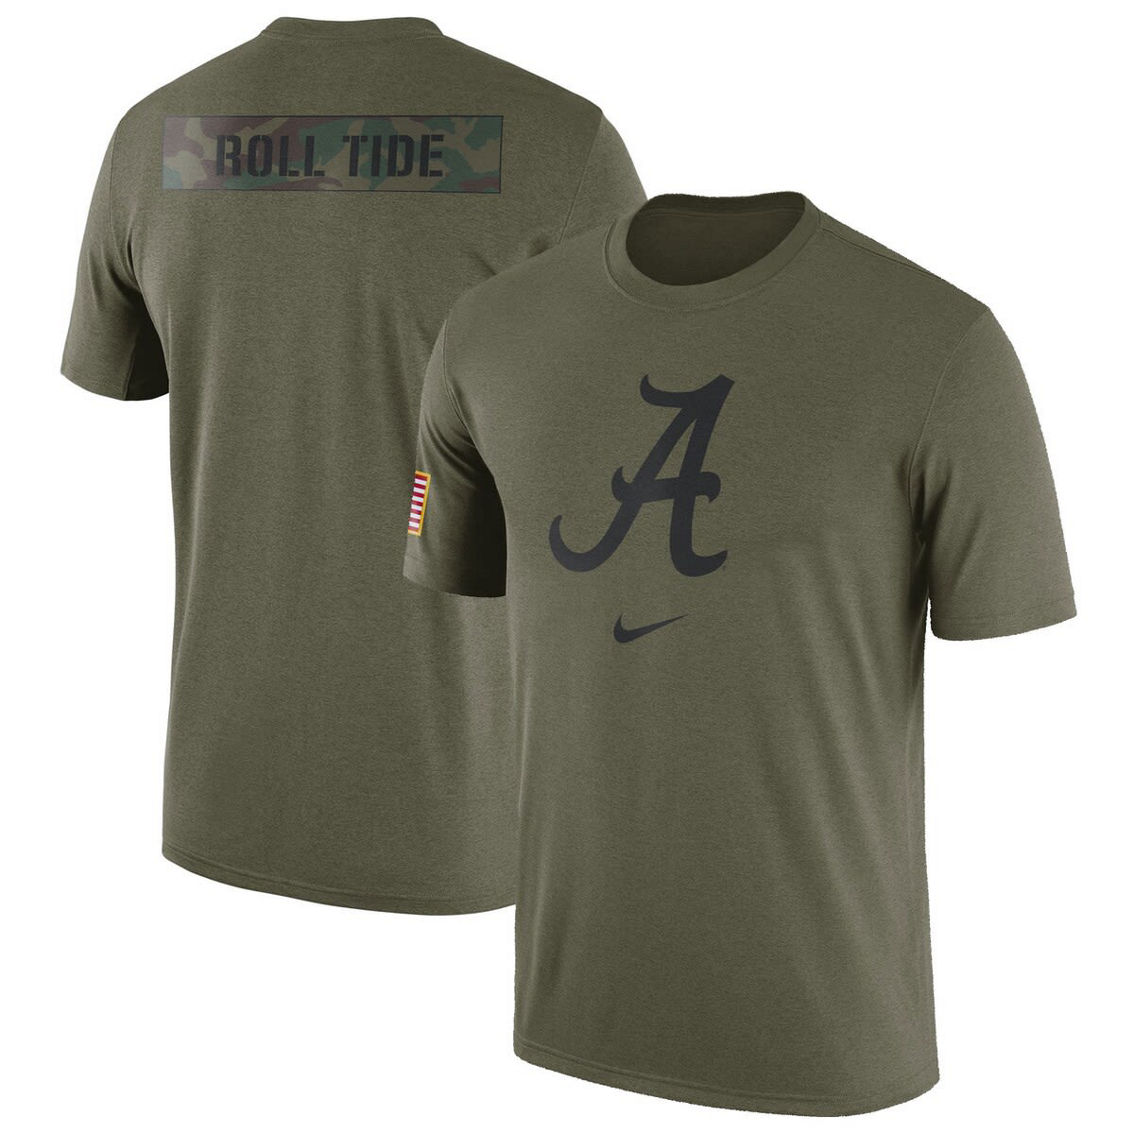 Nike Men's Olive Alabama Crimson Tide Military Pack T-Shirt - Image 2 of 4